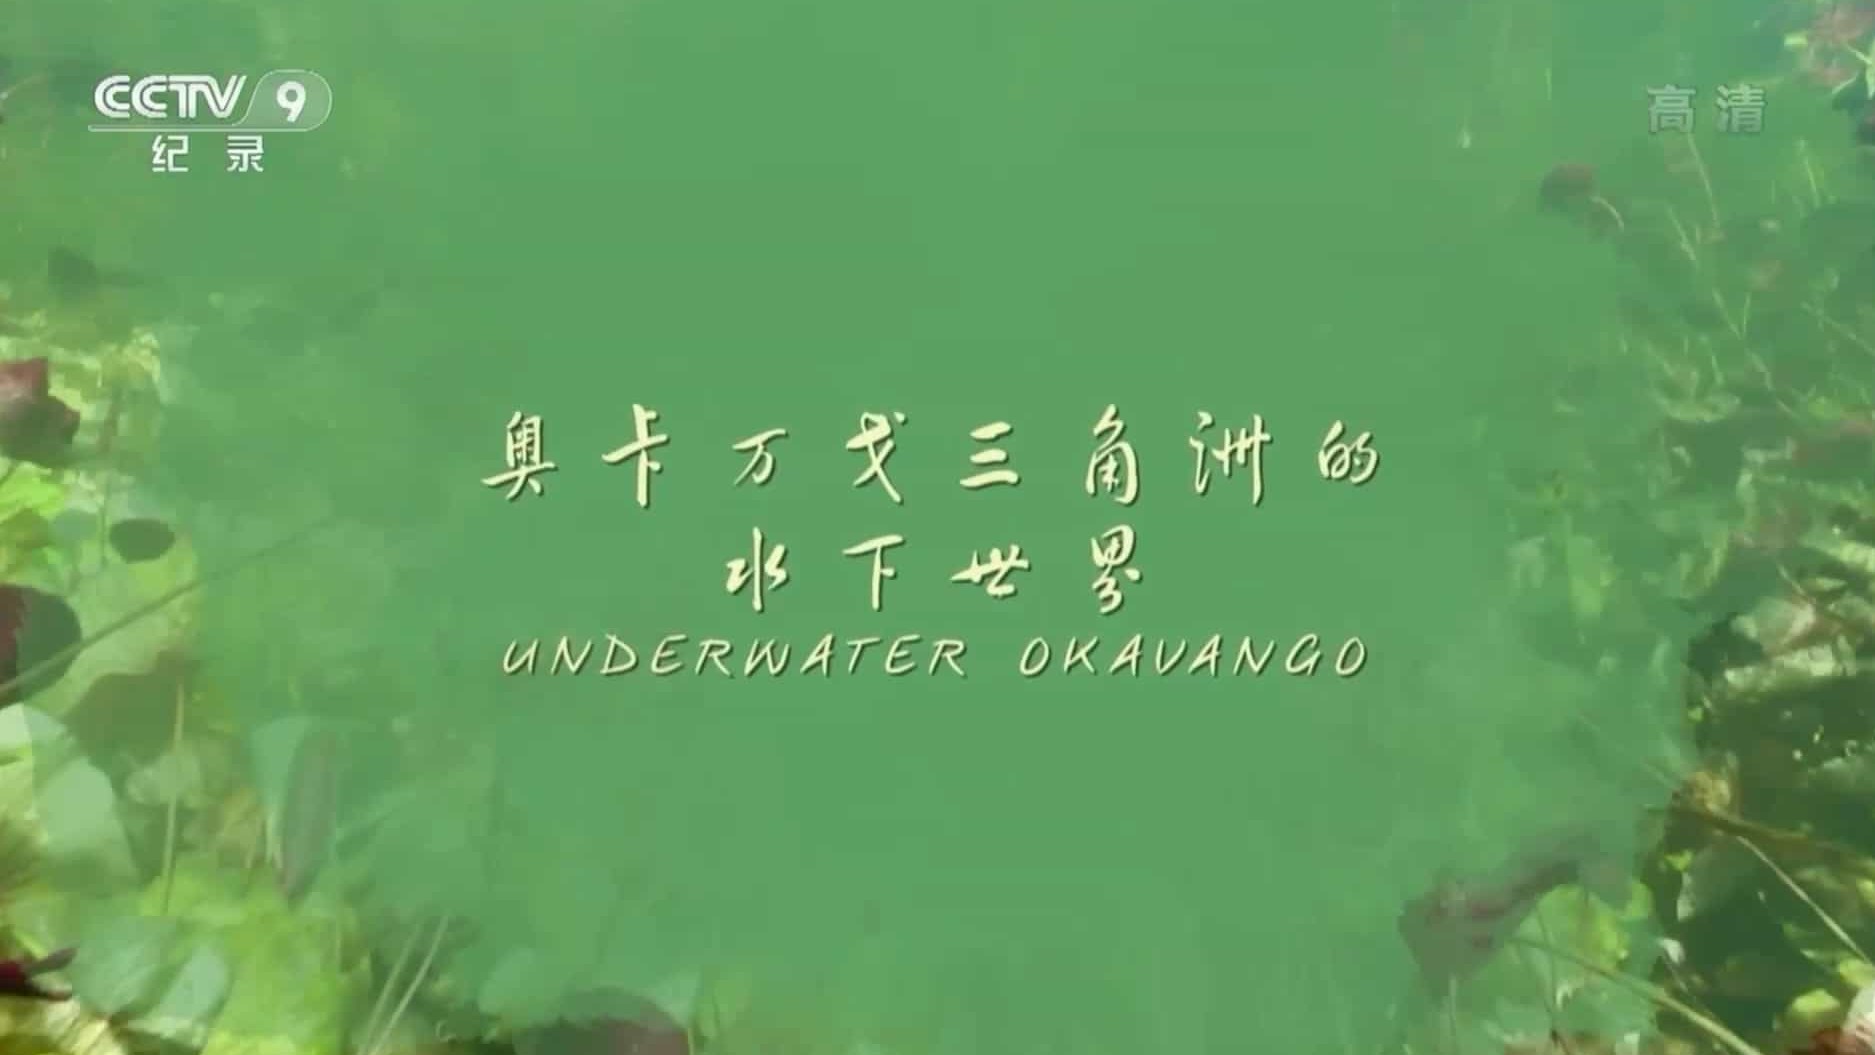 央视纪录片《奥卡万戈三角洲的水下世界 Underwater Okavango 2018》全1集 国语中字 1080P高清网盘下载